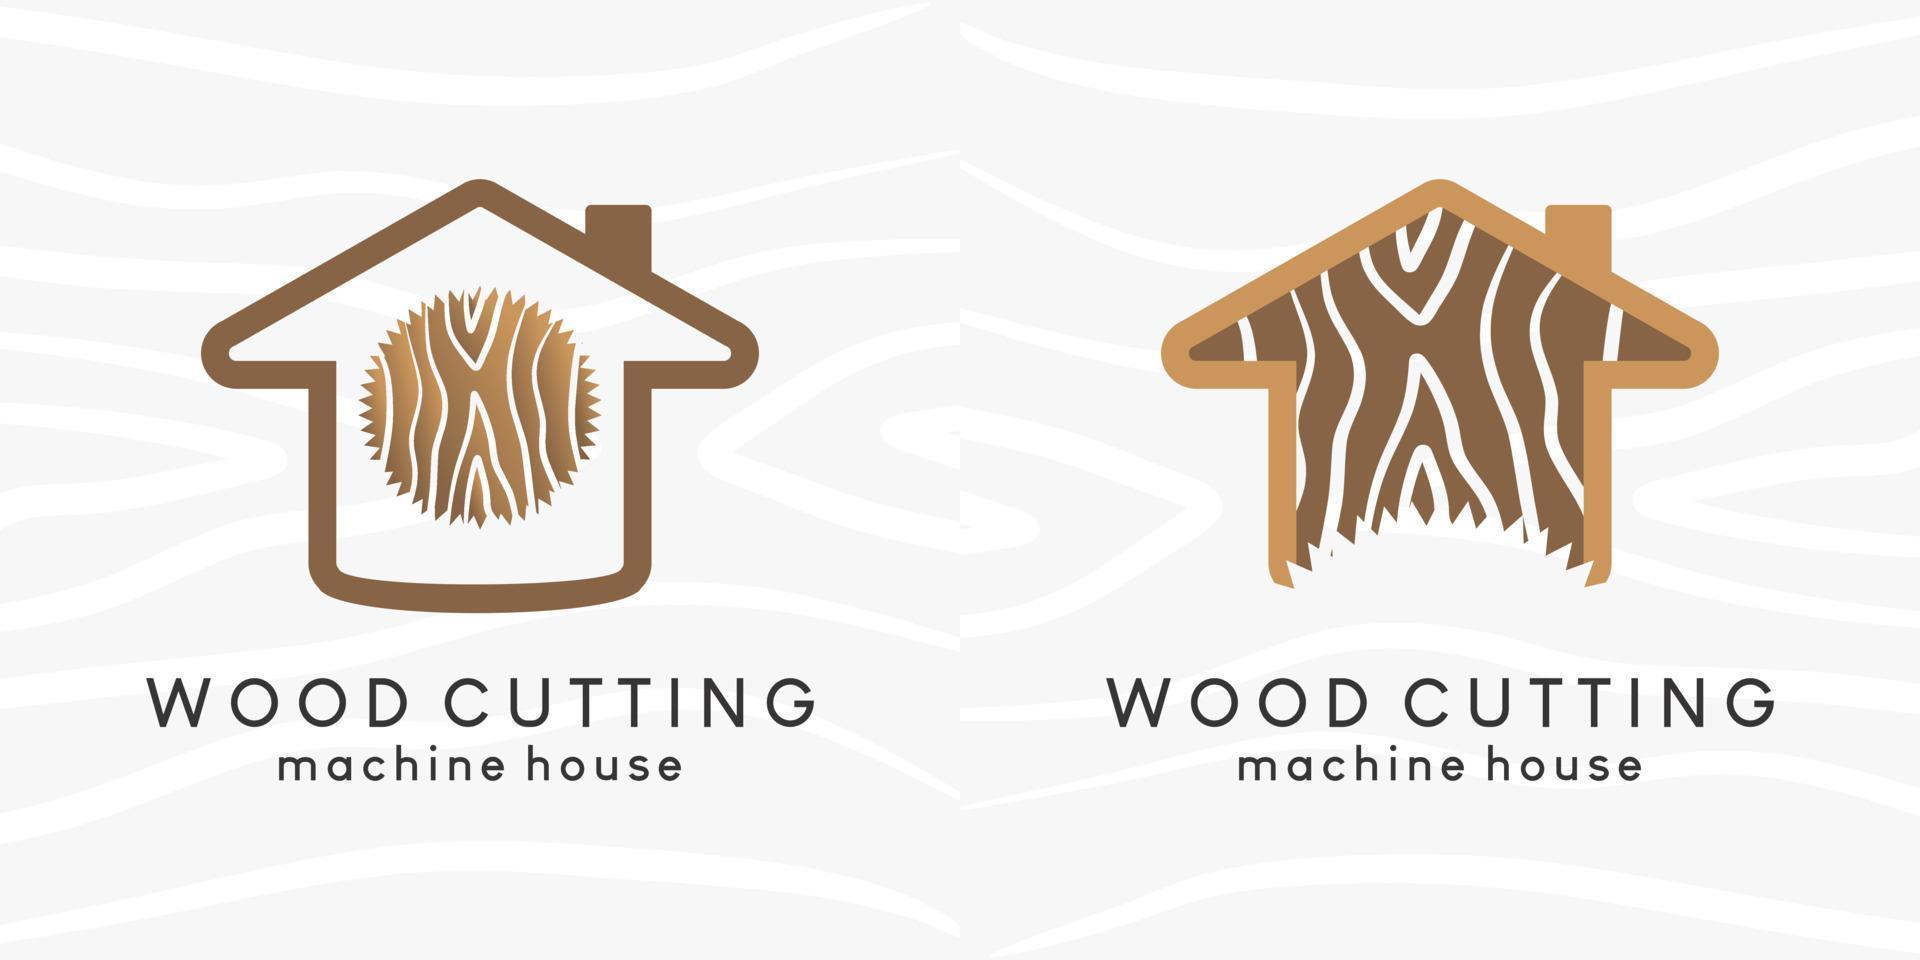 la conception du logo d'une scierie ou d'une maison de bûcheron avec un concept de motif en bois affiche l'icône d'une maison combinée à une scie circulaire vecteur